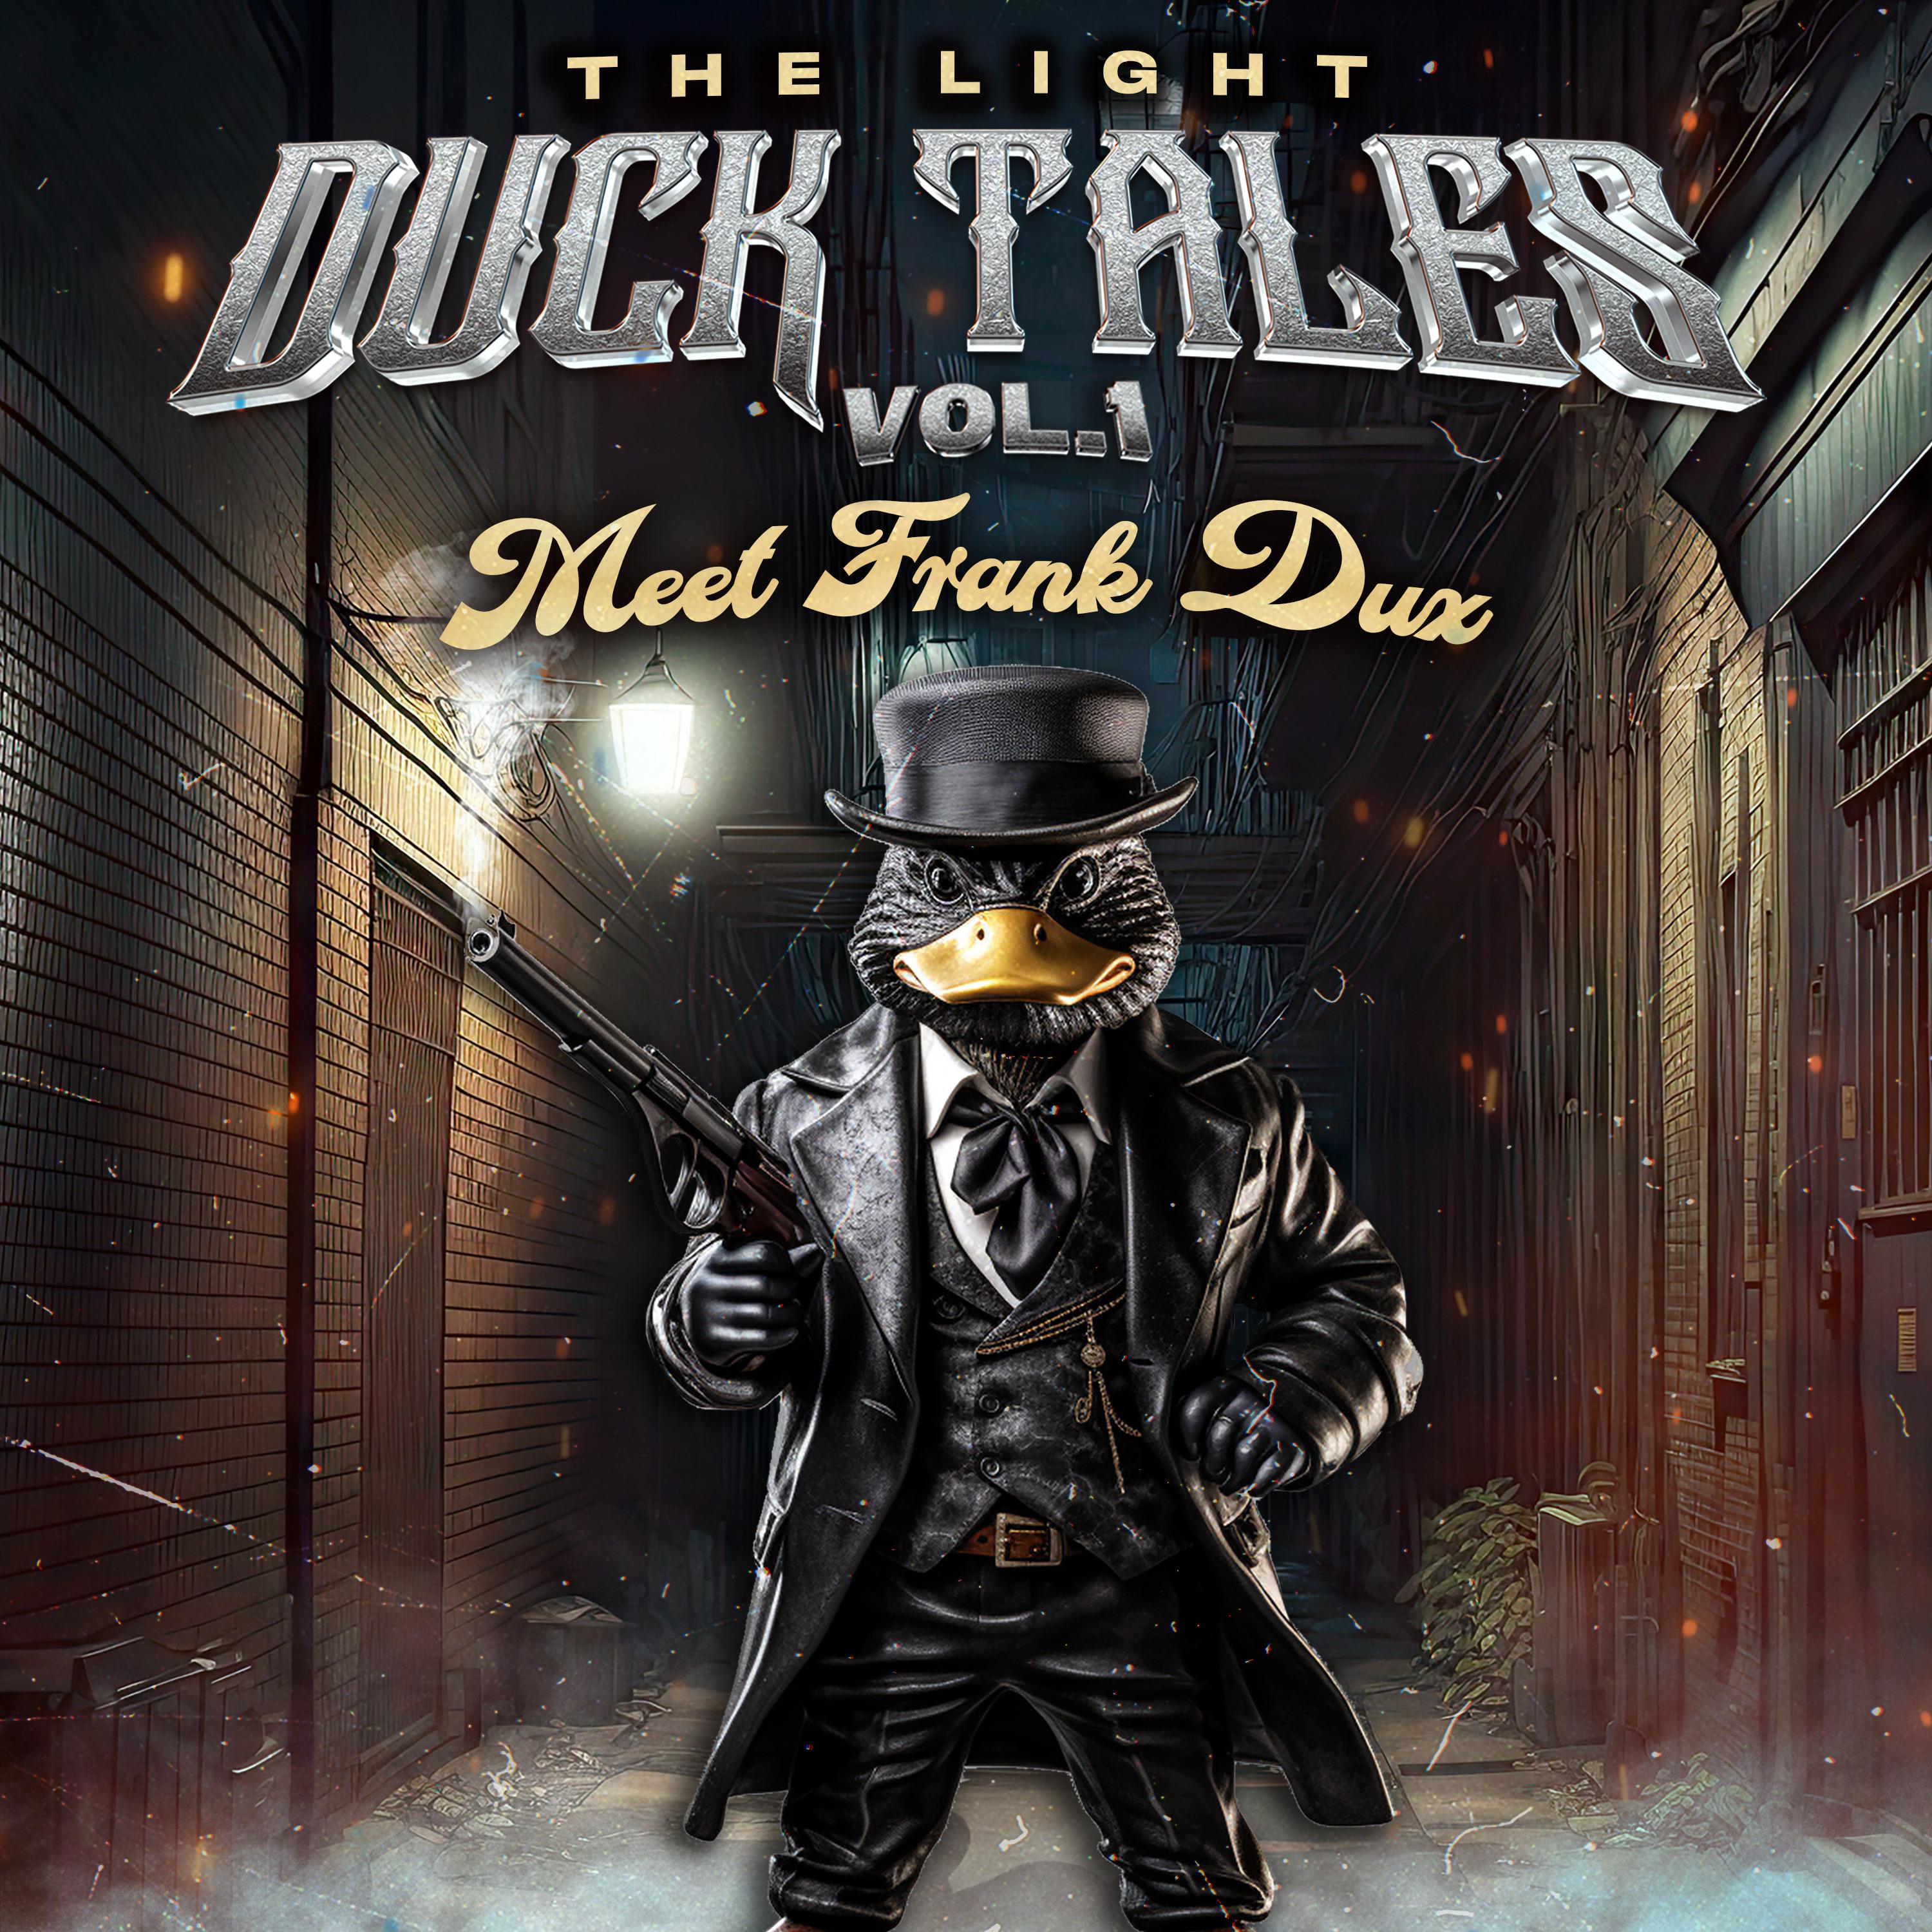 The Light - Duck Tales Vol.1 Meet Frank Dux